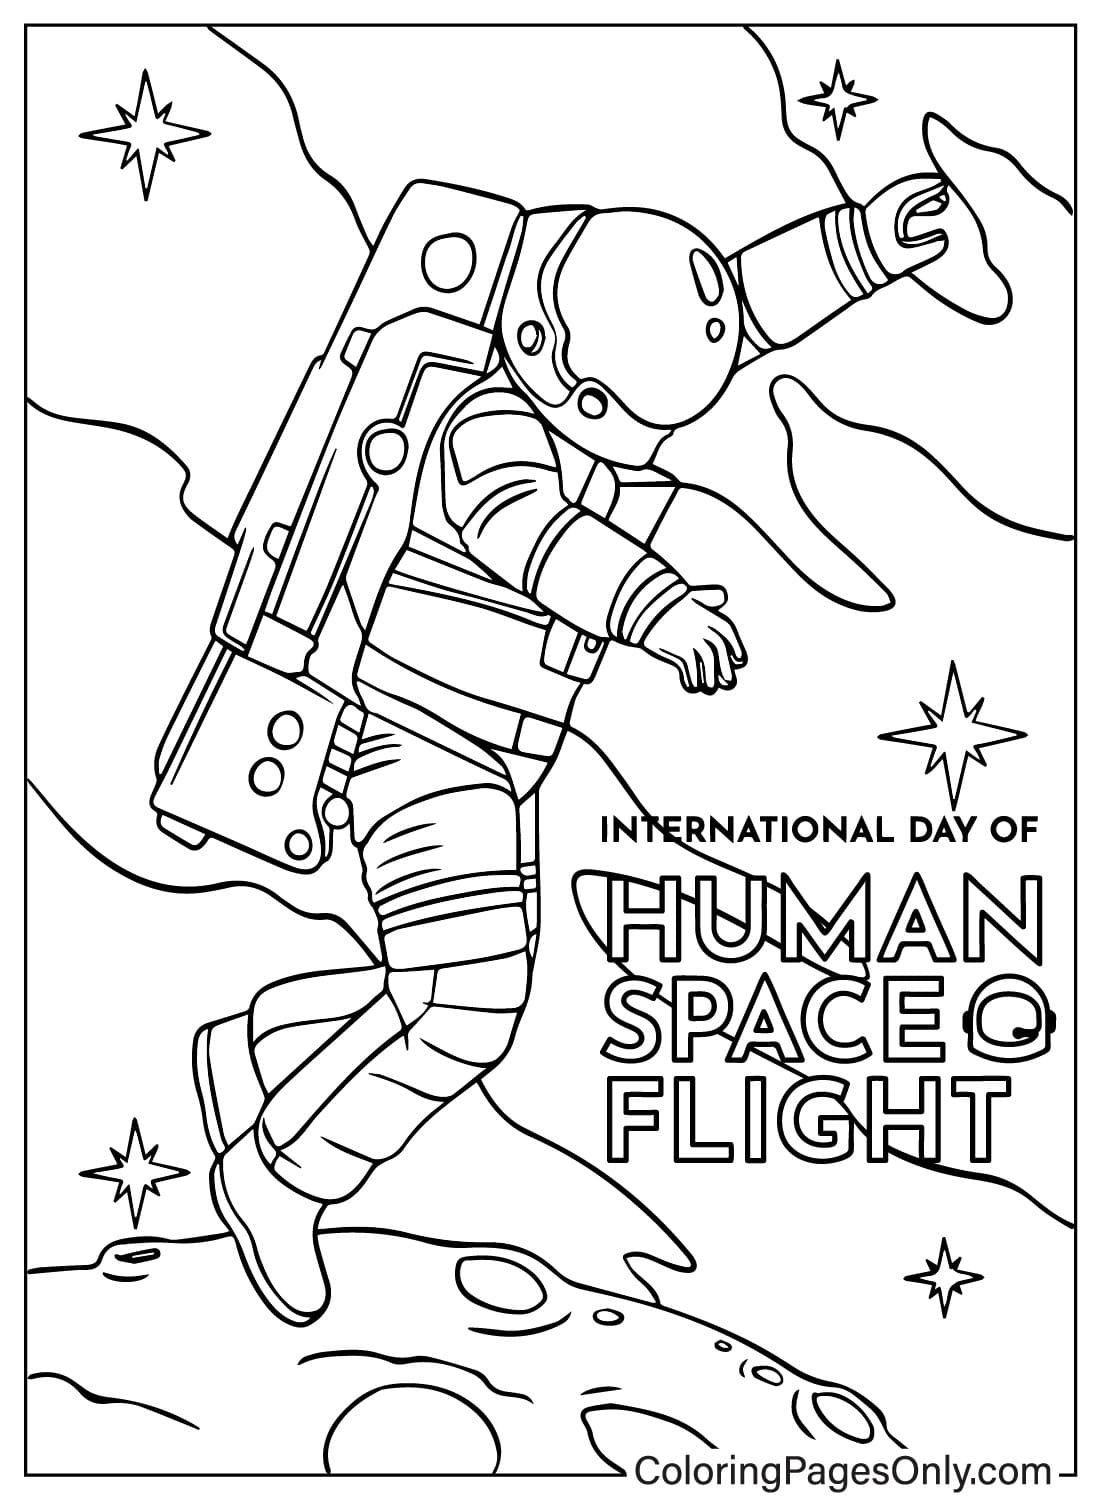 Página para colorear para adultos del Día Internacional de los Vuelos Espaciales Tripulados del Día Internacional de los Vuelos Espaciales Tripulados